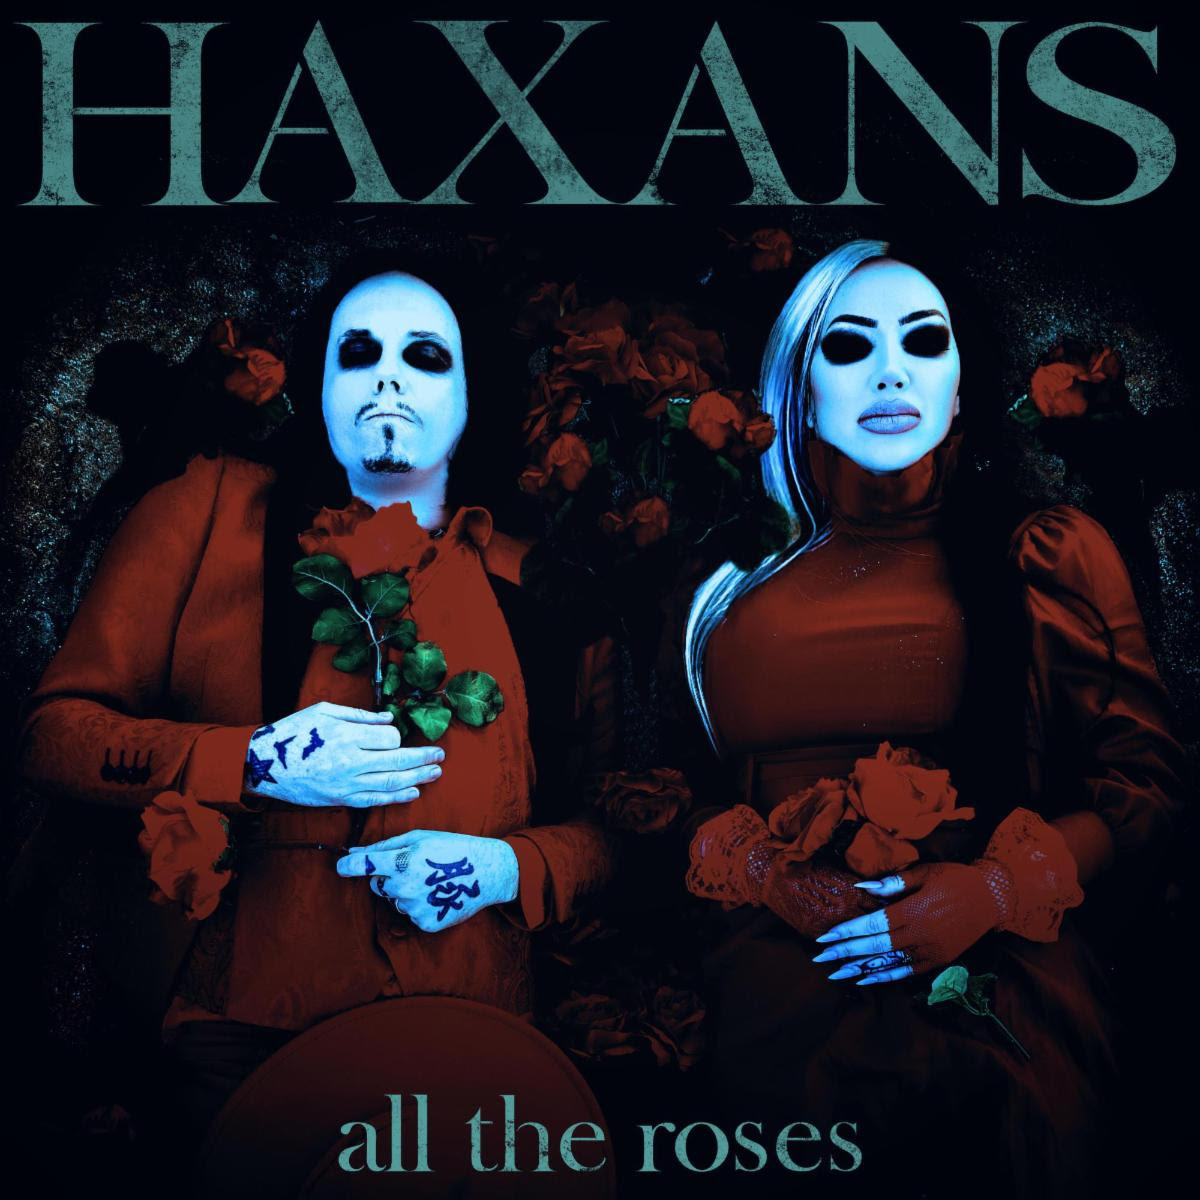 The Haxans